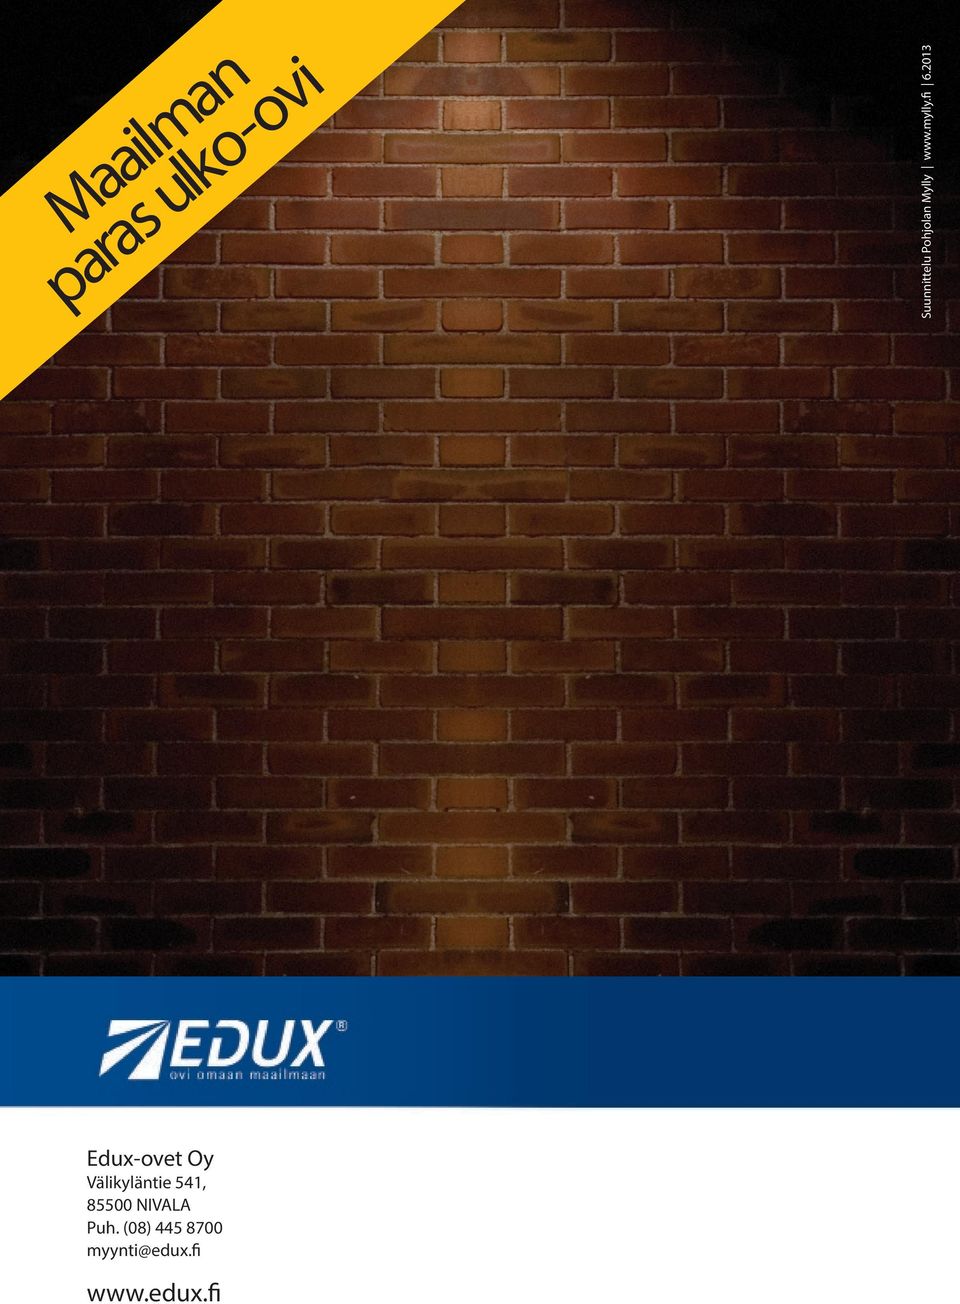 2013 Löydä oma ovesi osoitteesta www.edux.